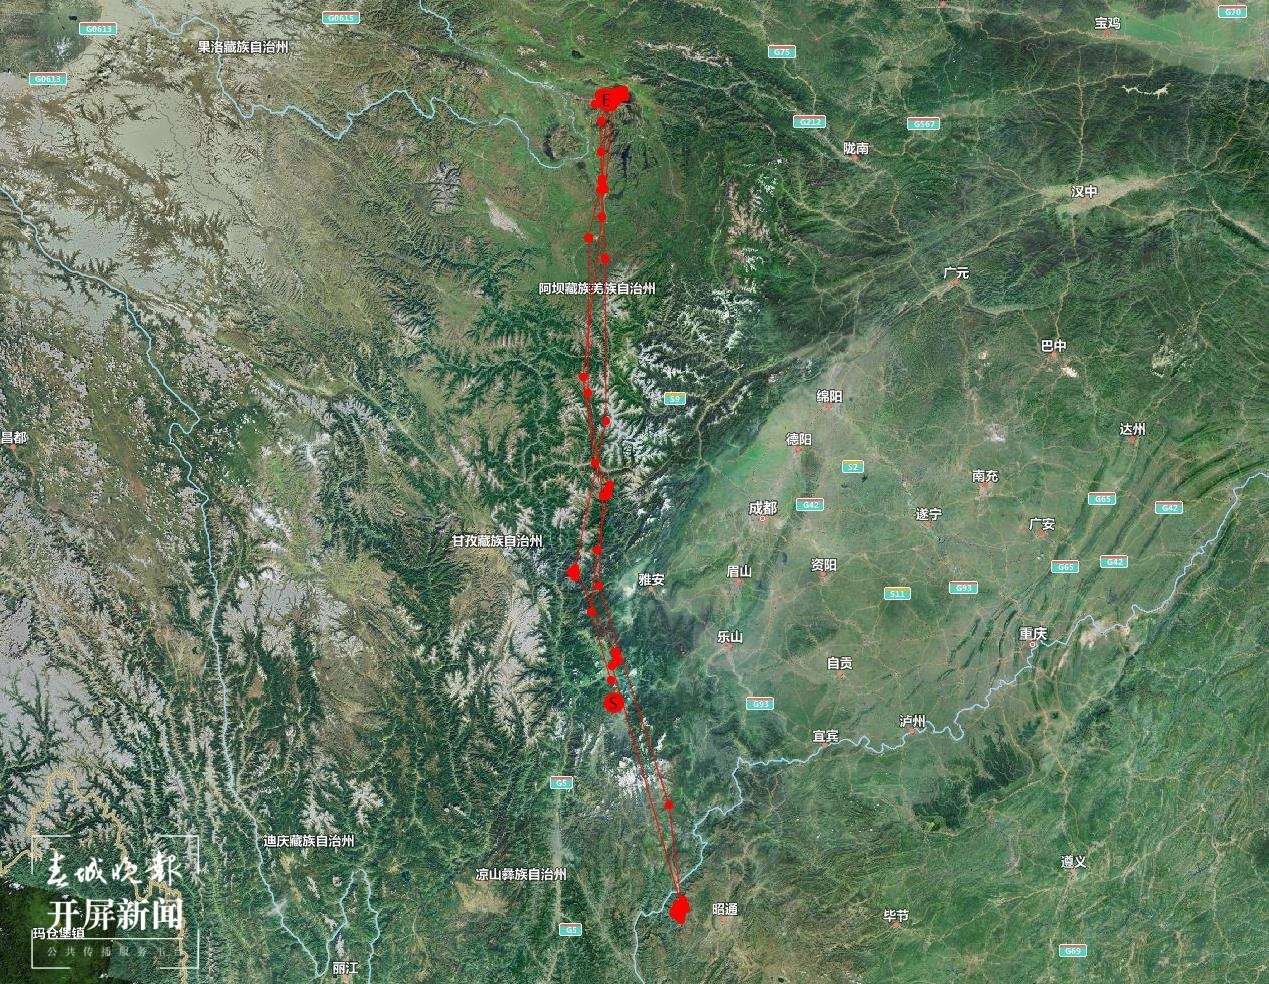 中国丹顶鹤迁徙路线图图片